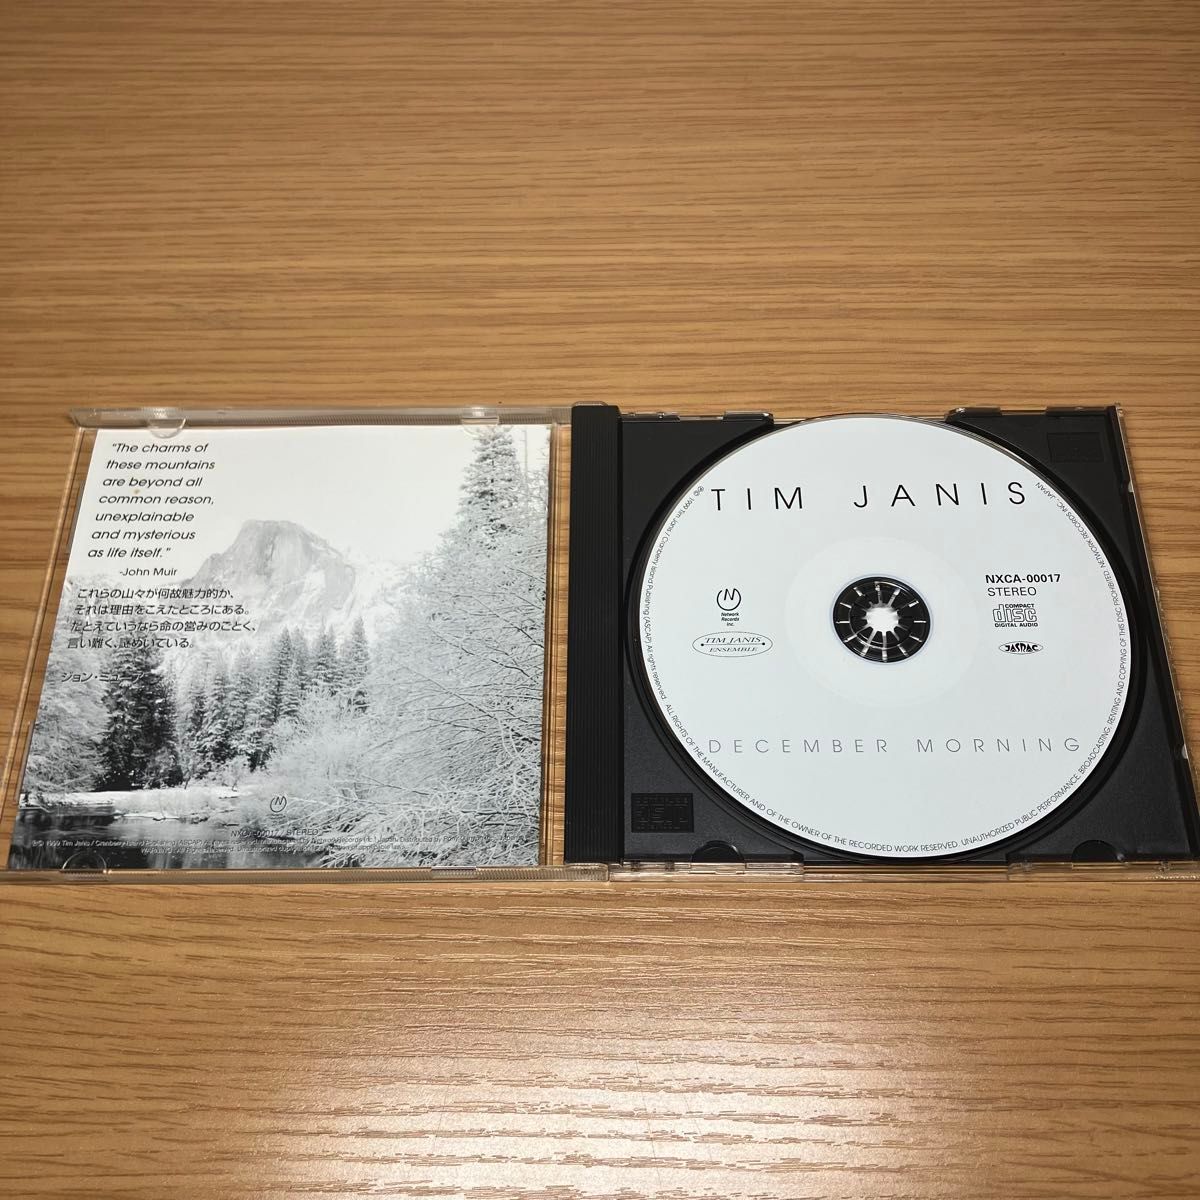 ティム ジャニス 音楽CD ヒーリングミュージック アルバム サンプル盤